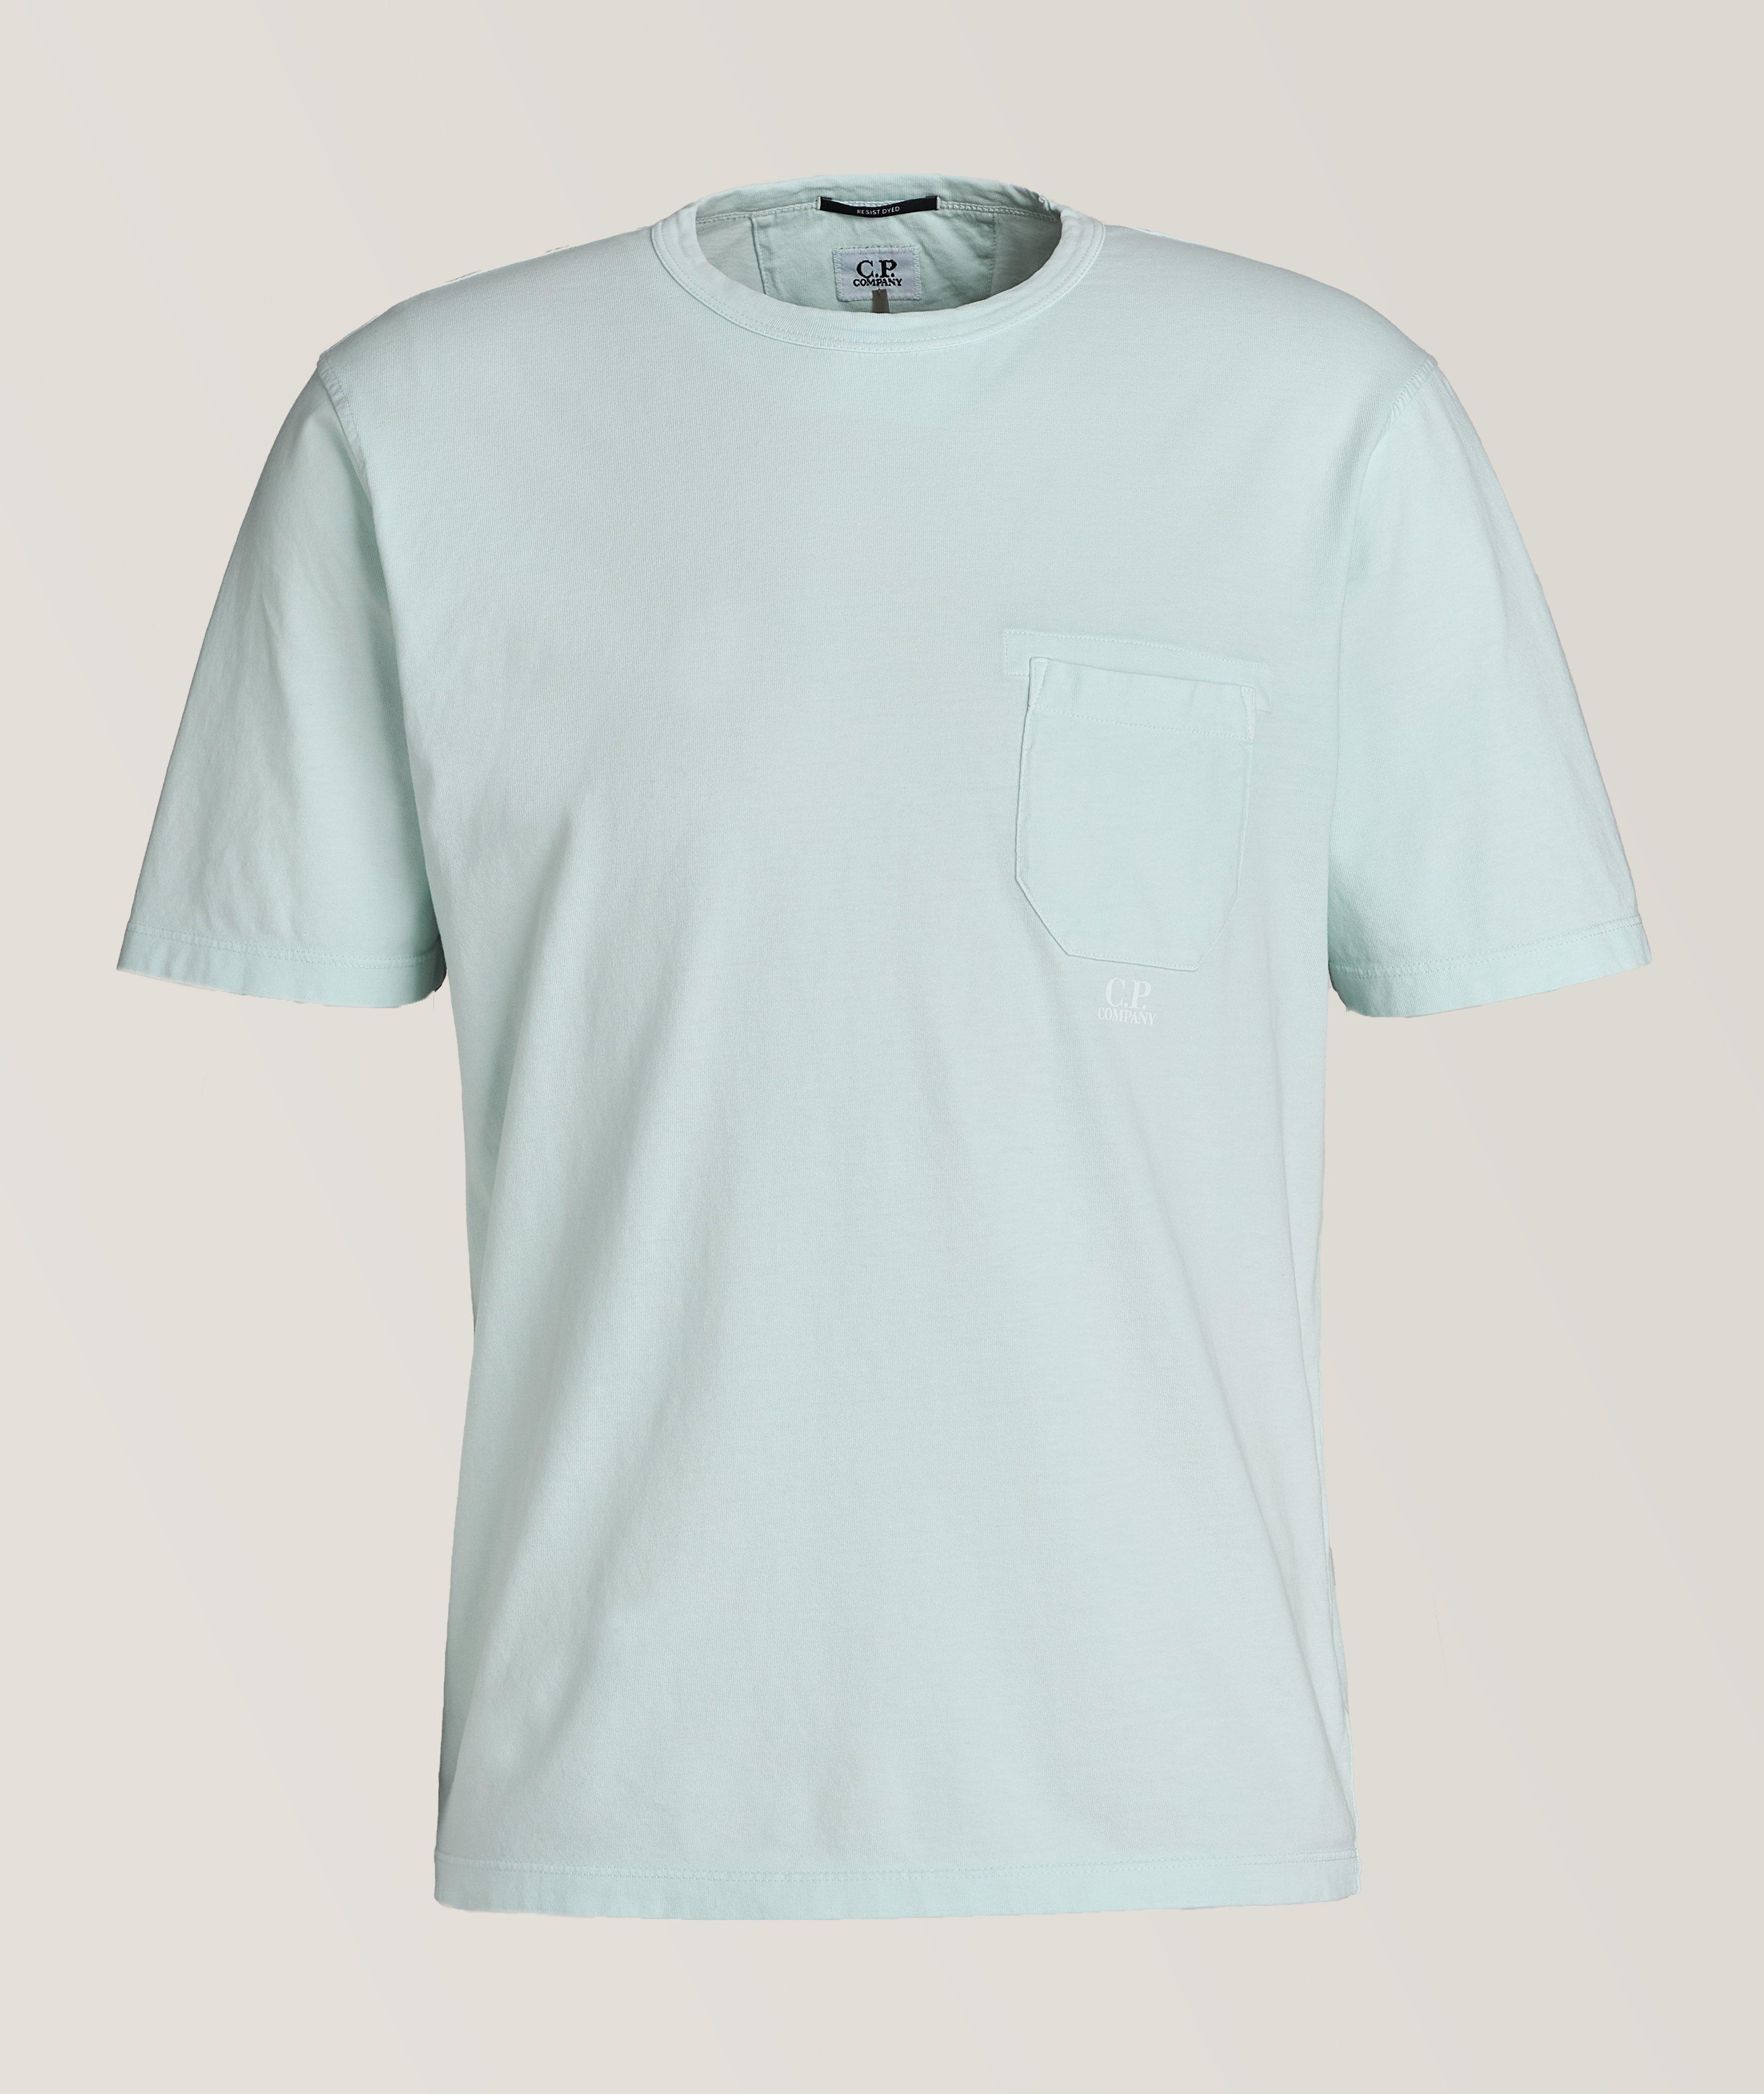 Resist Dye Cotton T-Shirt image 0